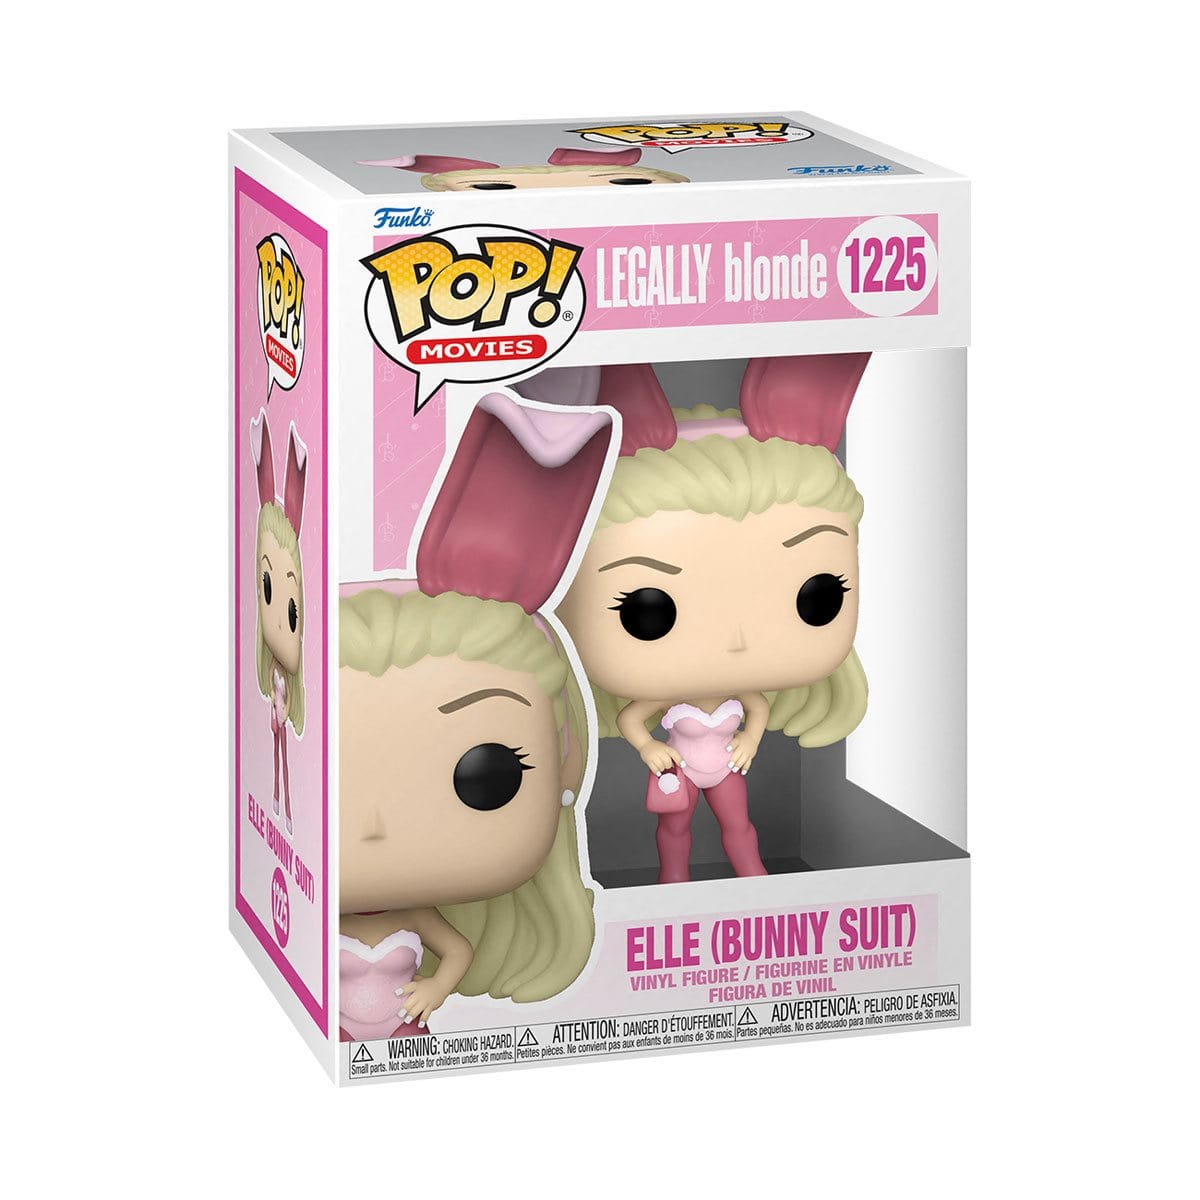 Legally Blonde Elle Woods (Bunny Suit) Pop! Vinyl Figure